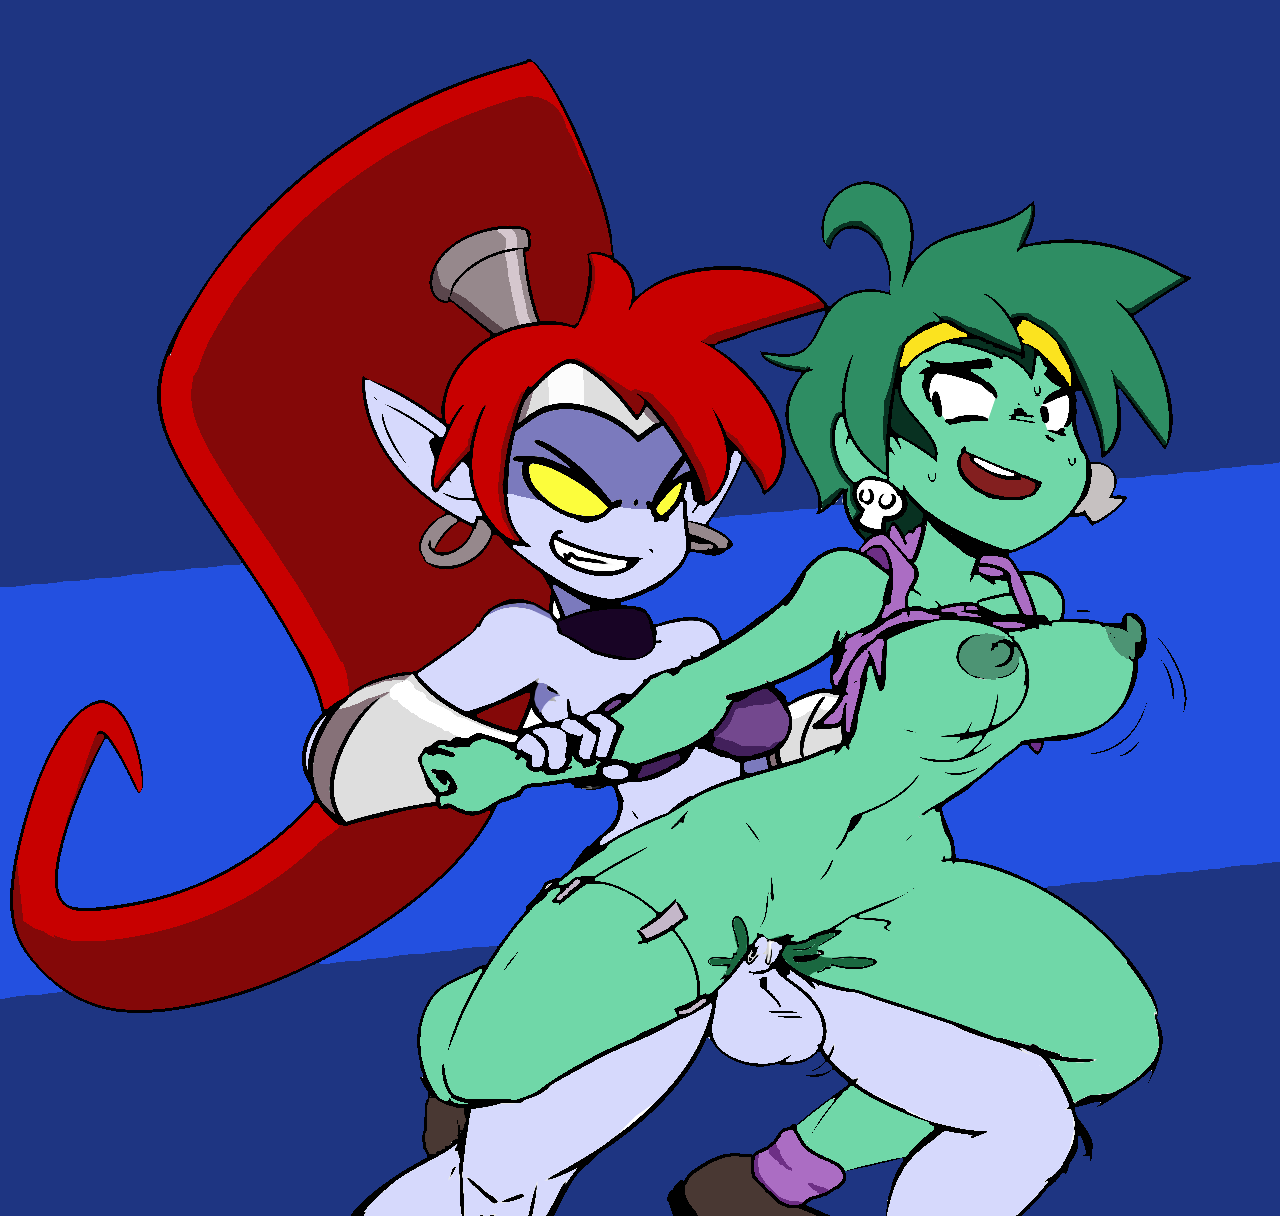 Shantae rottytops monstergirl adventure lesbian version